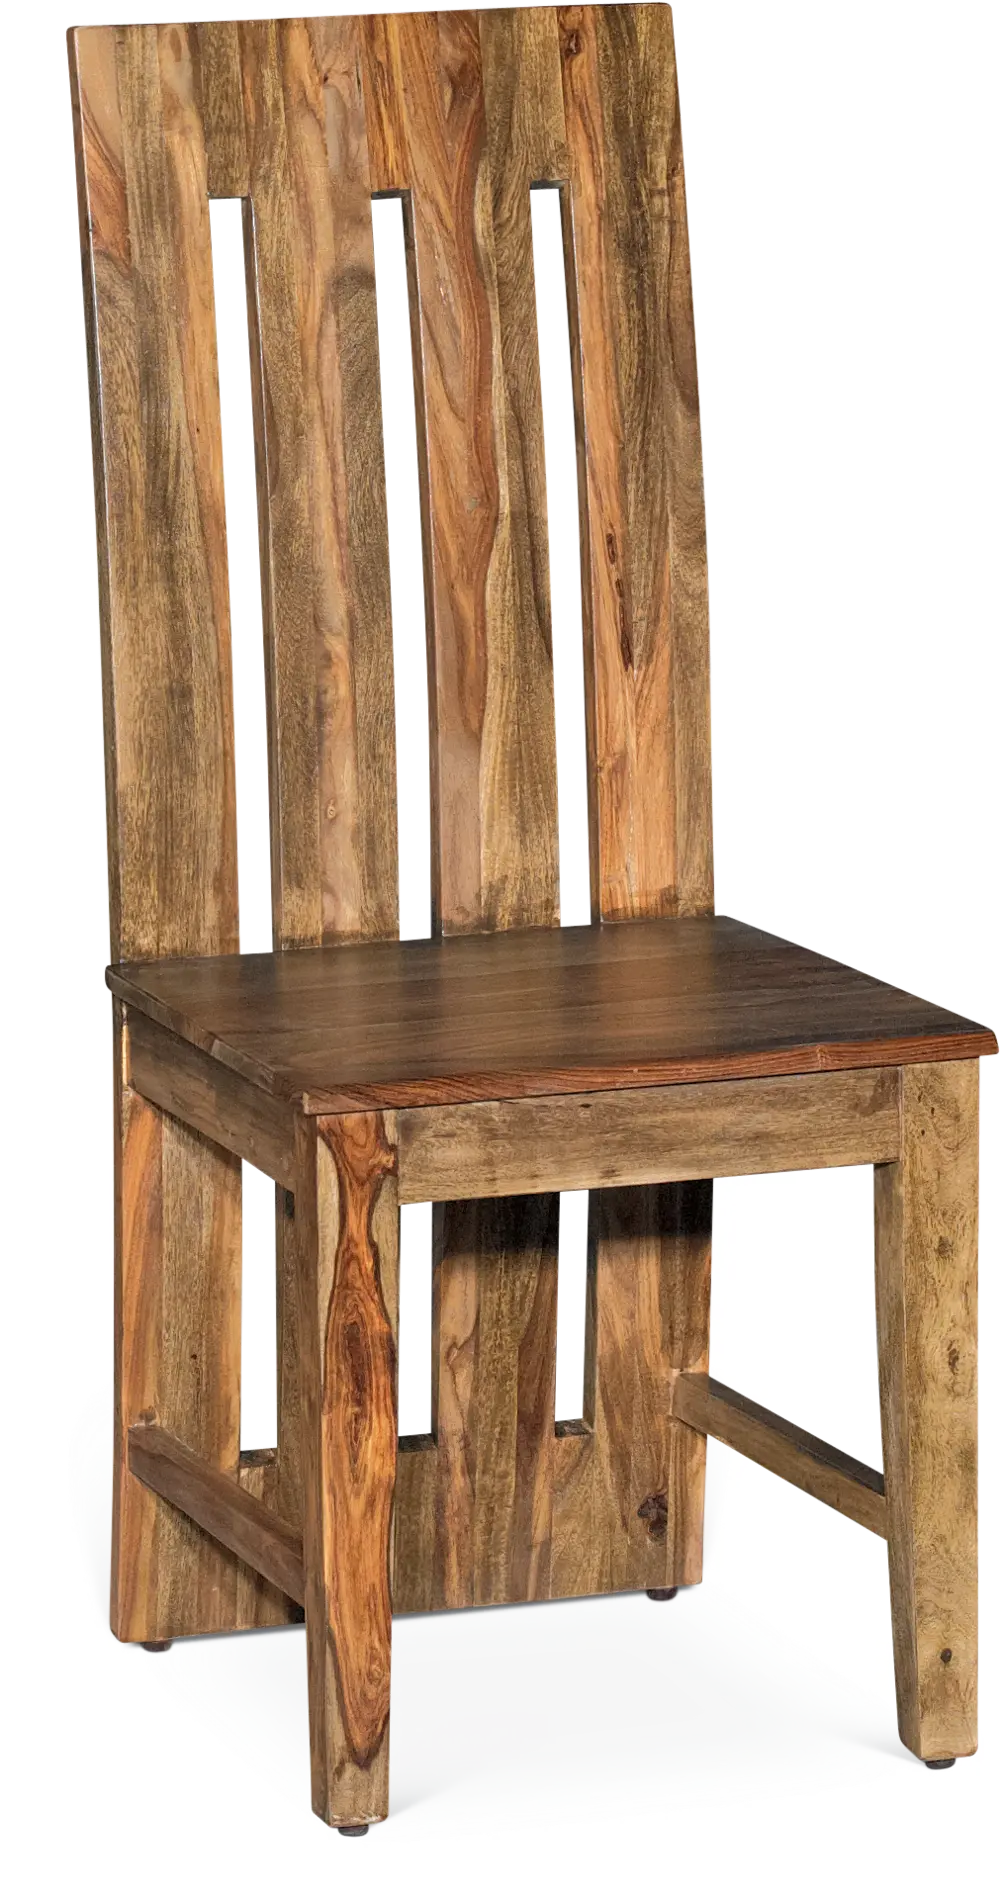 Cinnamon Dining Chair - Urban-1